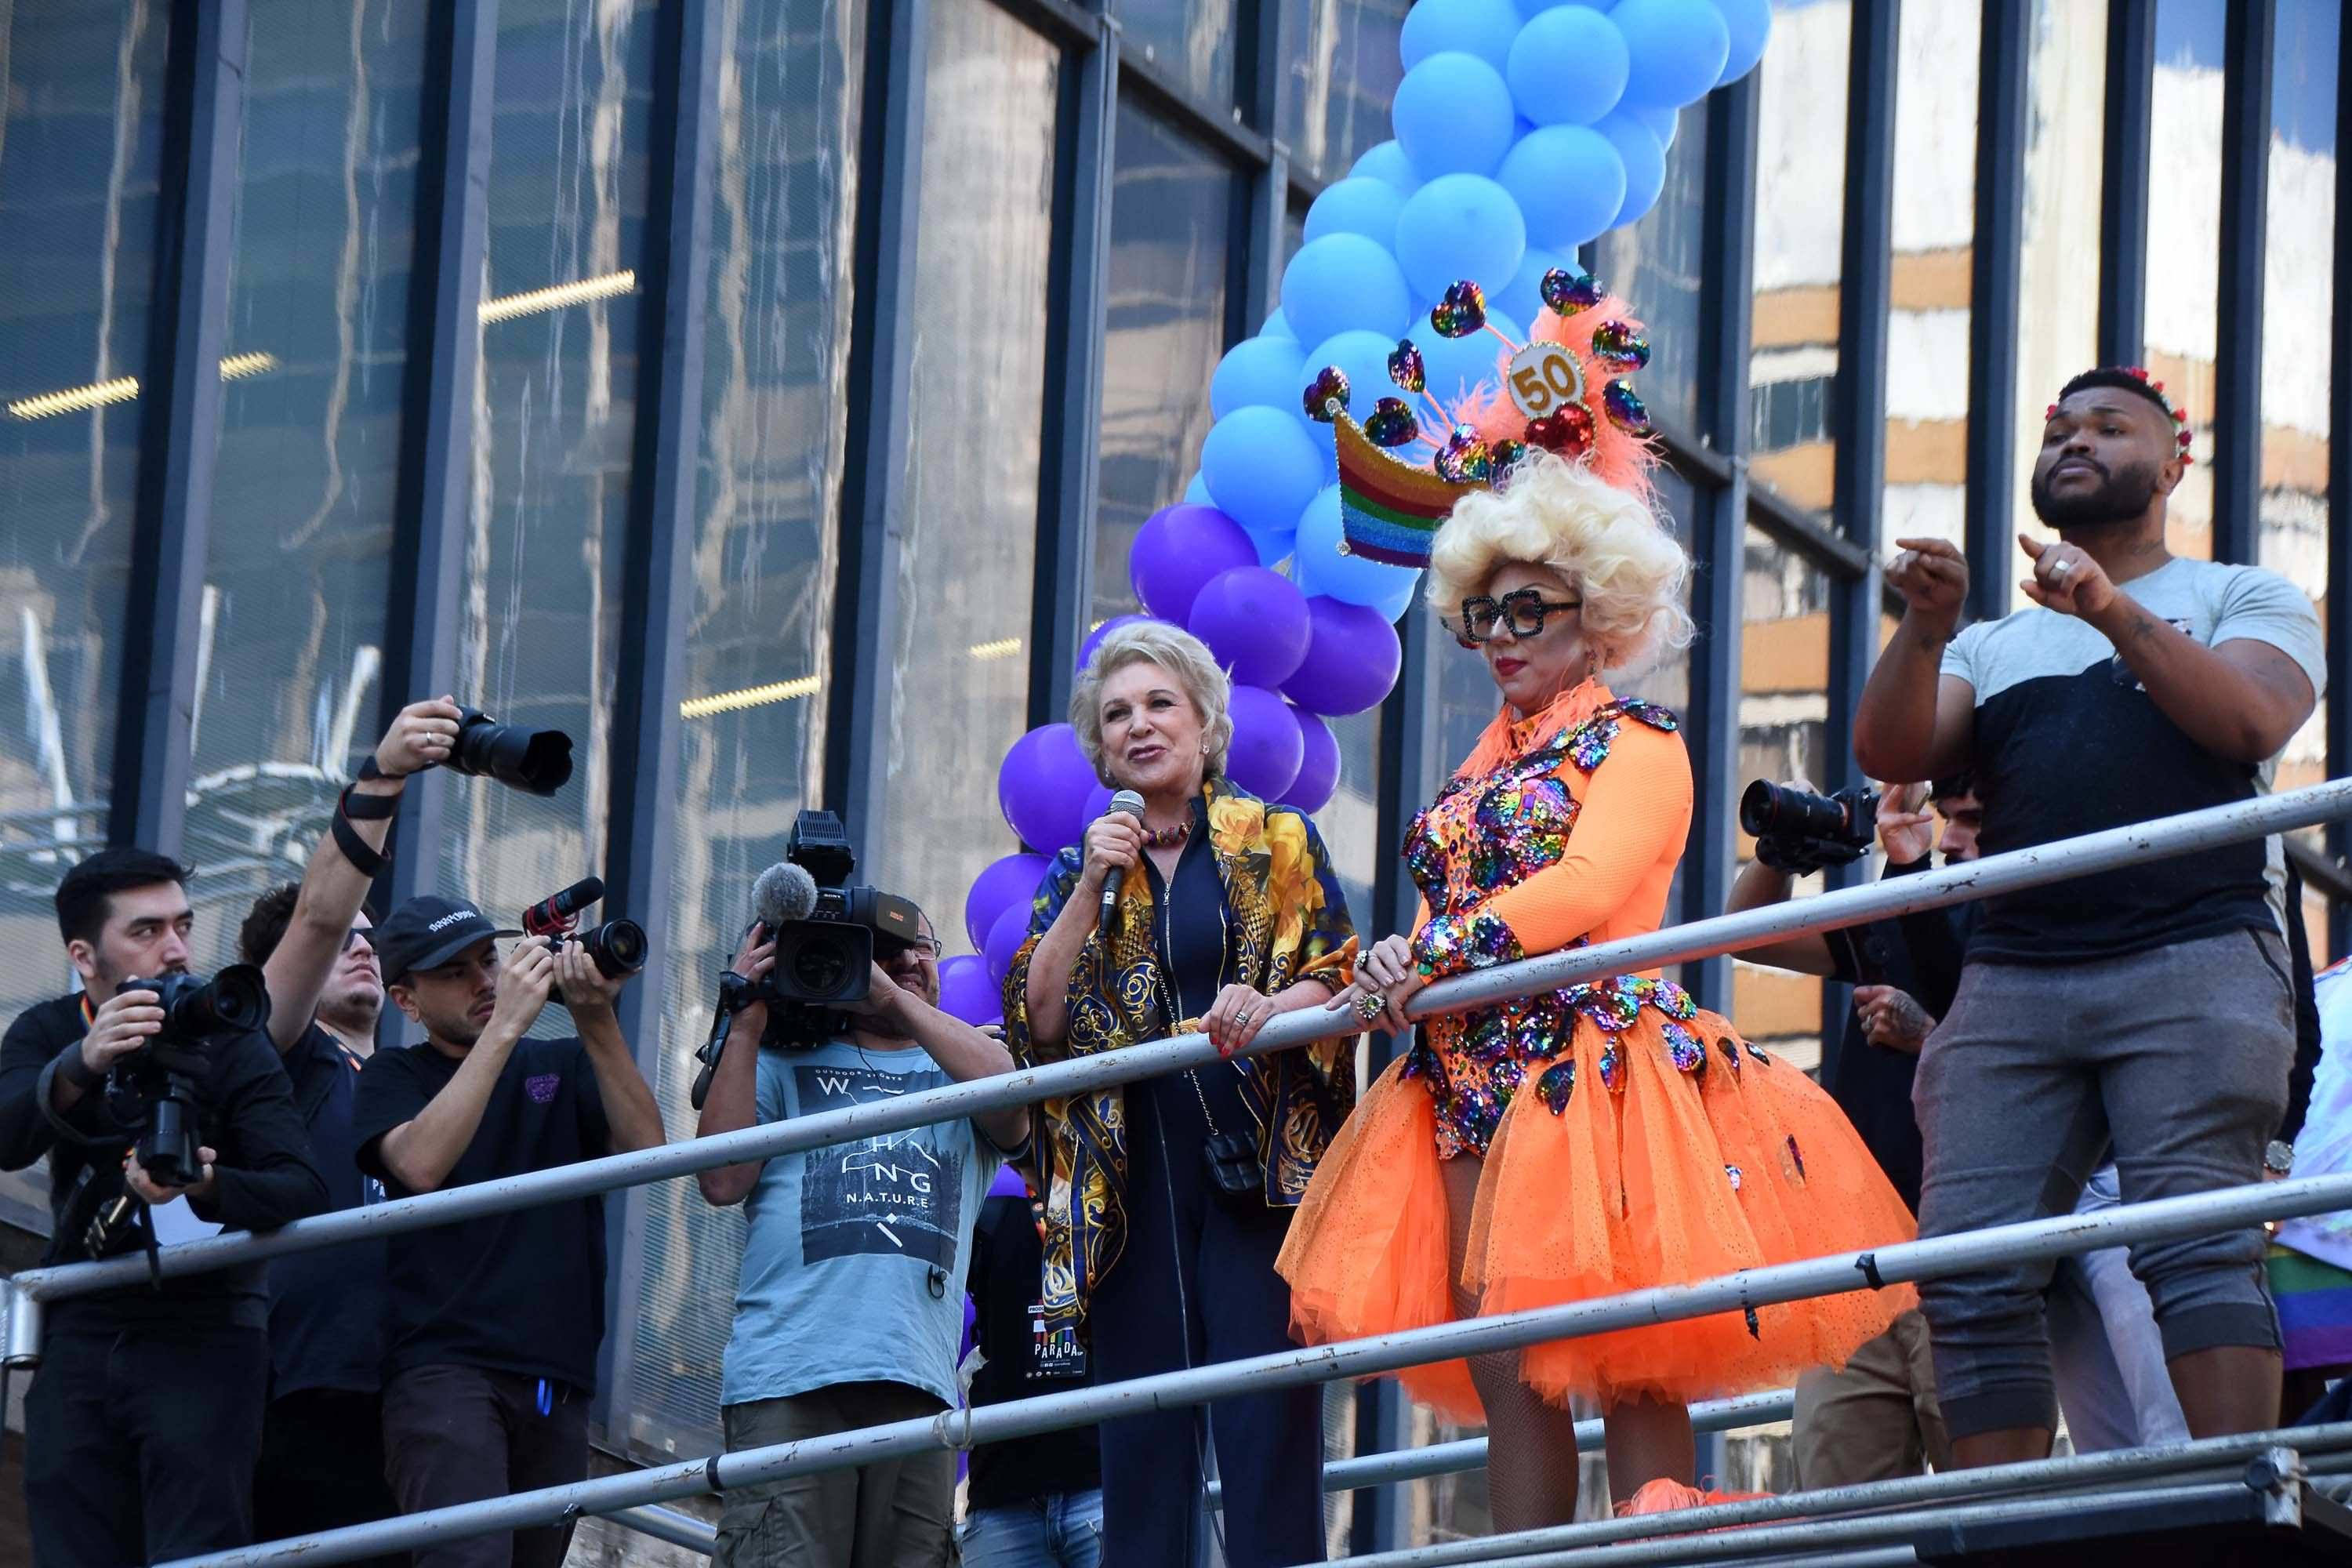 Parada do Orgulho LGBT tem forte tom político contra governo Bolsonaro